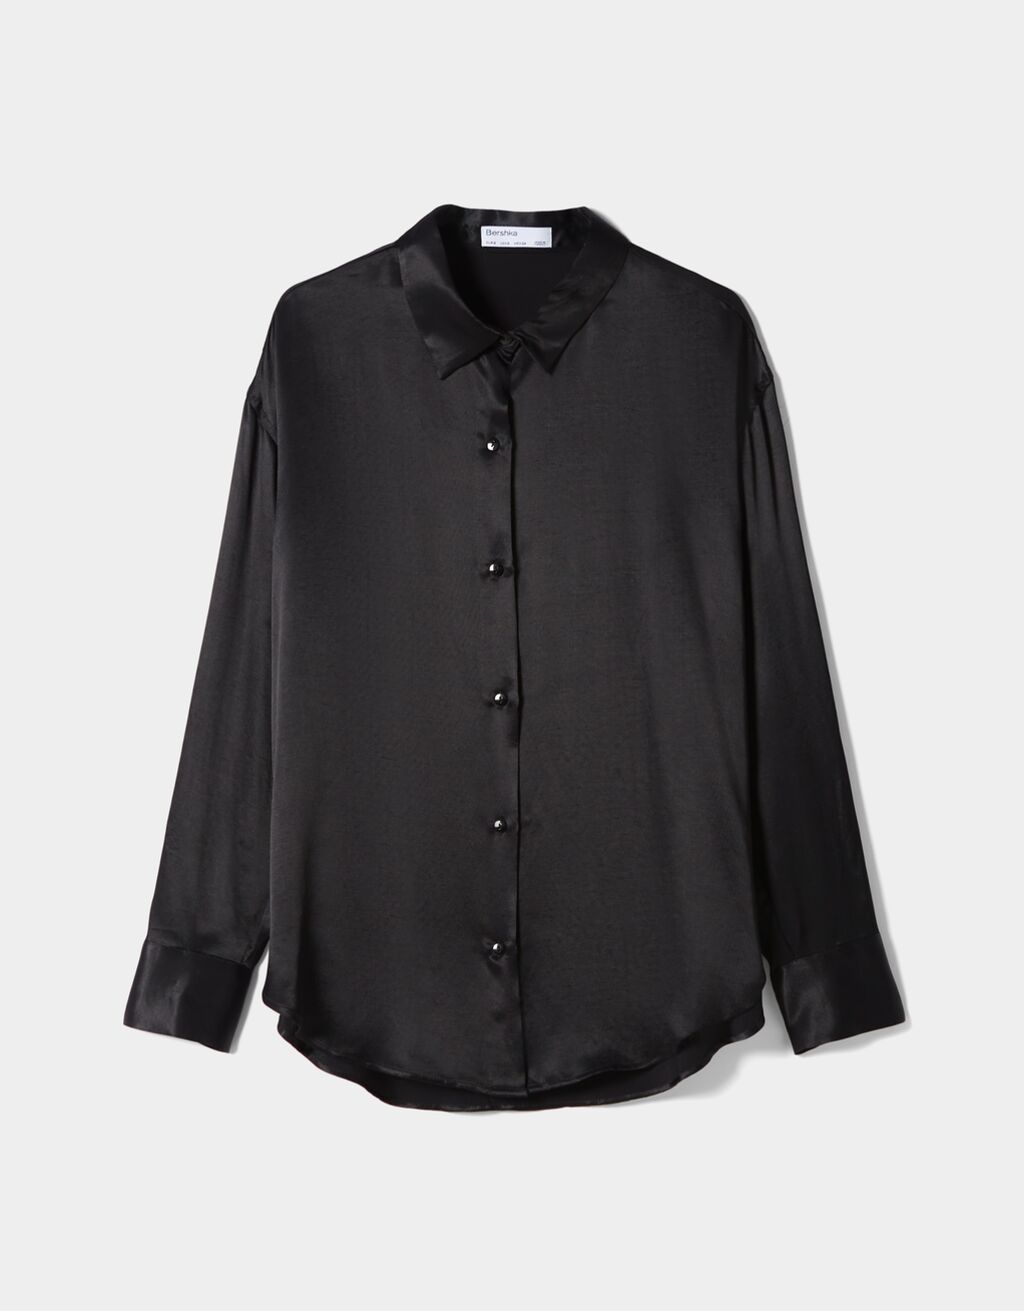 Mode Shirts Shirtbodies Bershka Shirtbody zwart extravagante stijl 